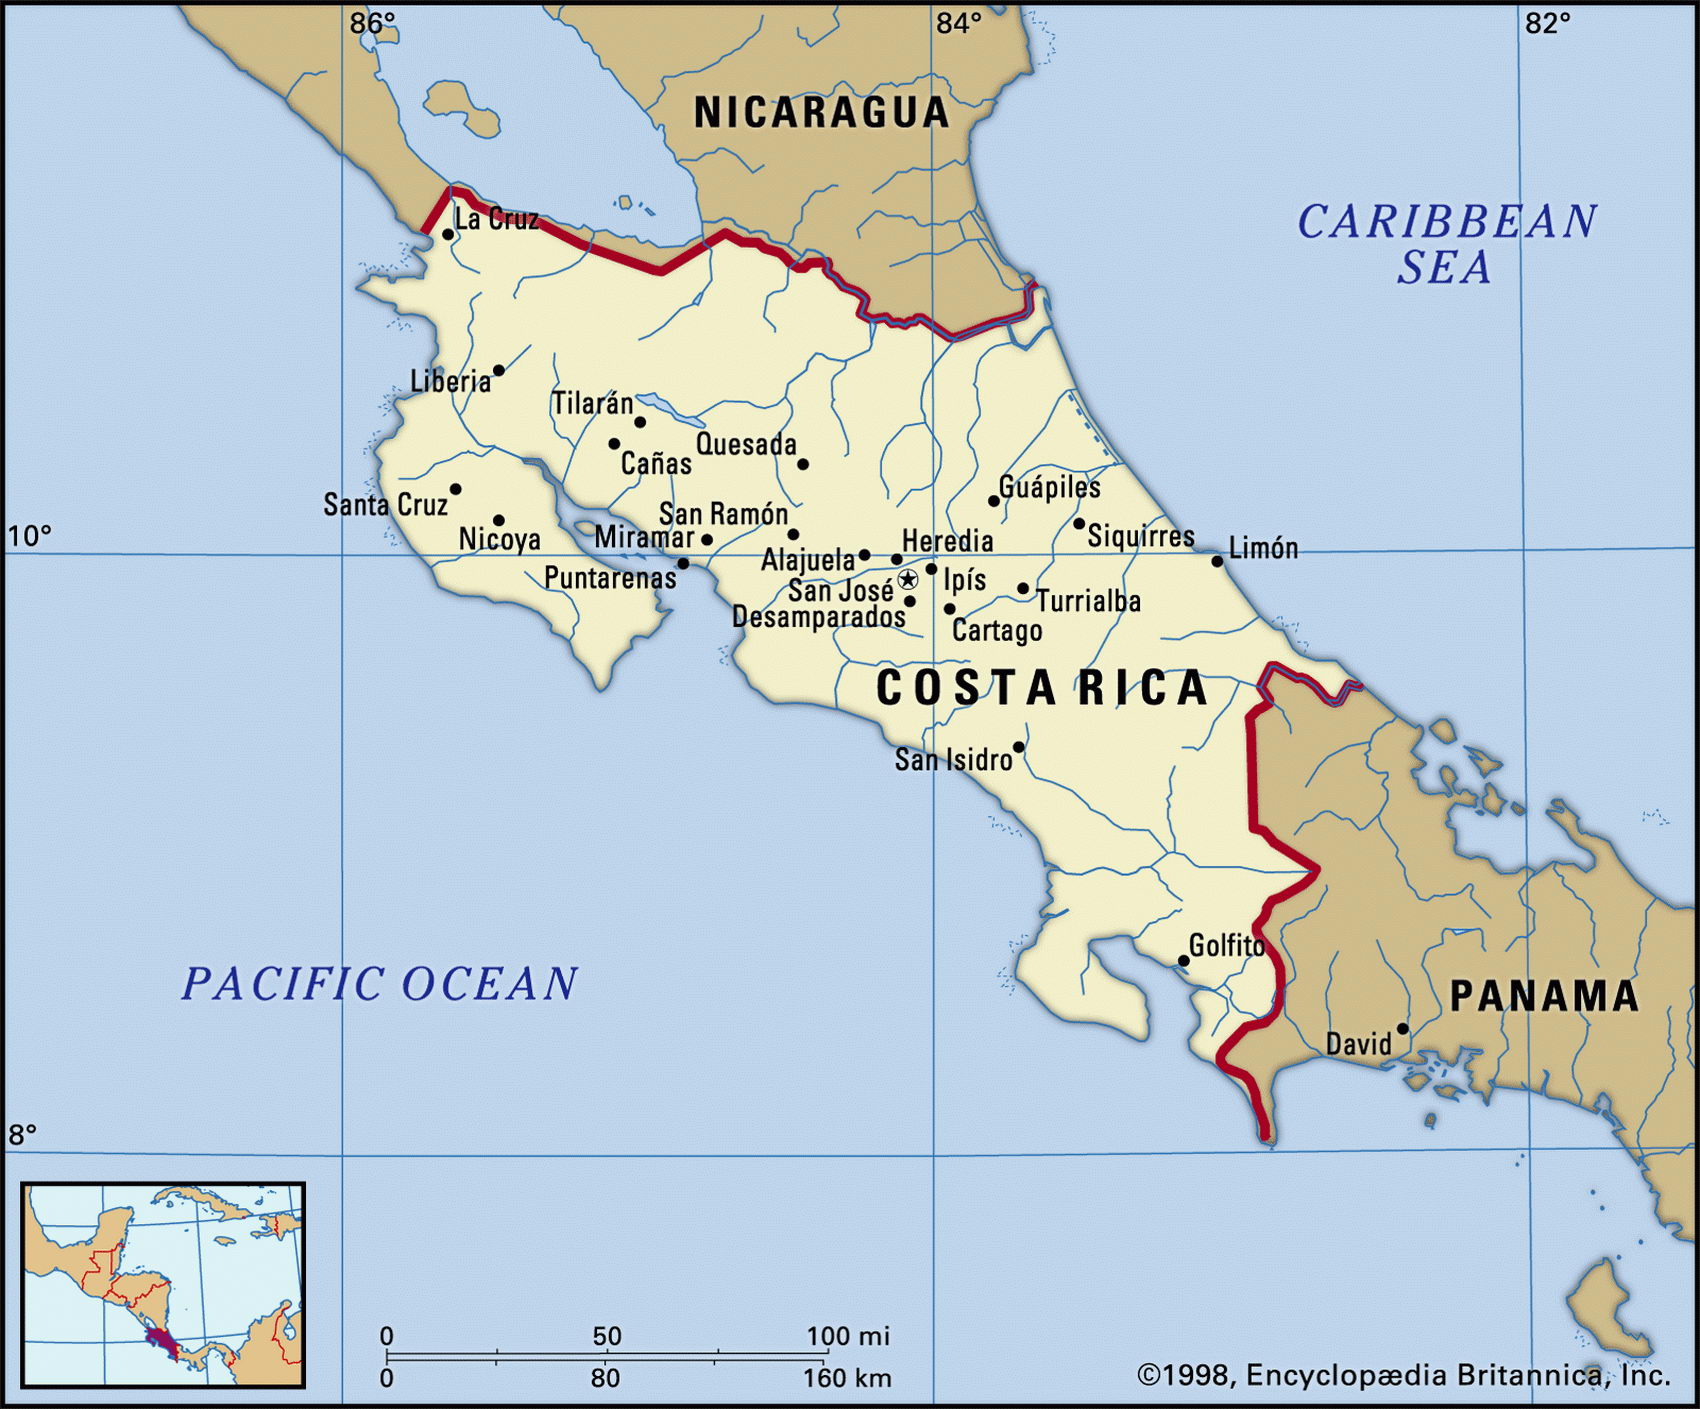 Коста рика где находится какая страна